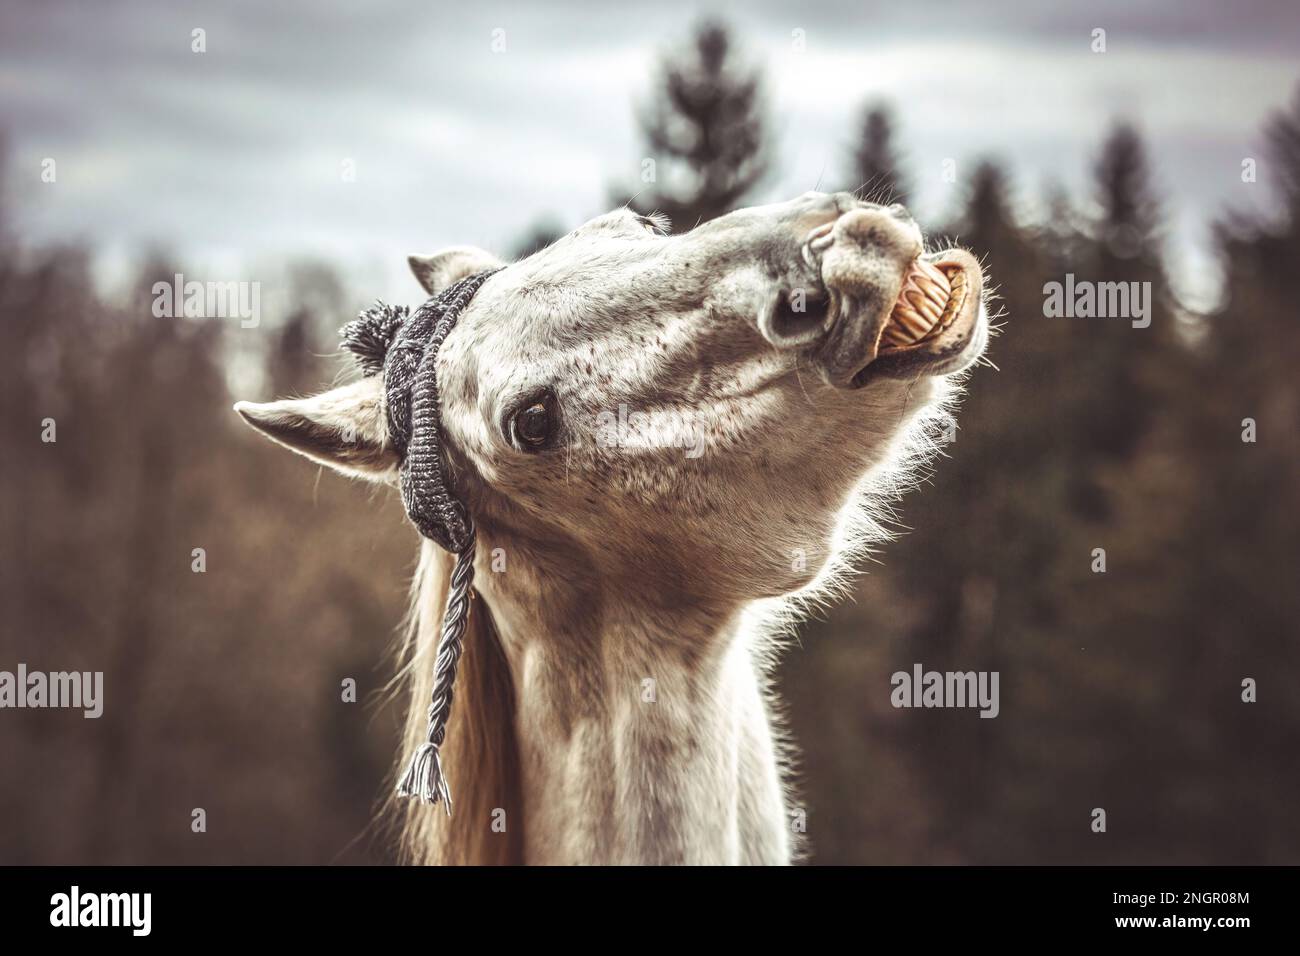 Divertente ritratto di testa di un cavallo arabo bianco che gelda indossando un berretto lanoso e mostrando un trucco sembra ridere Foto Stock